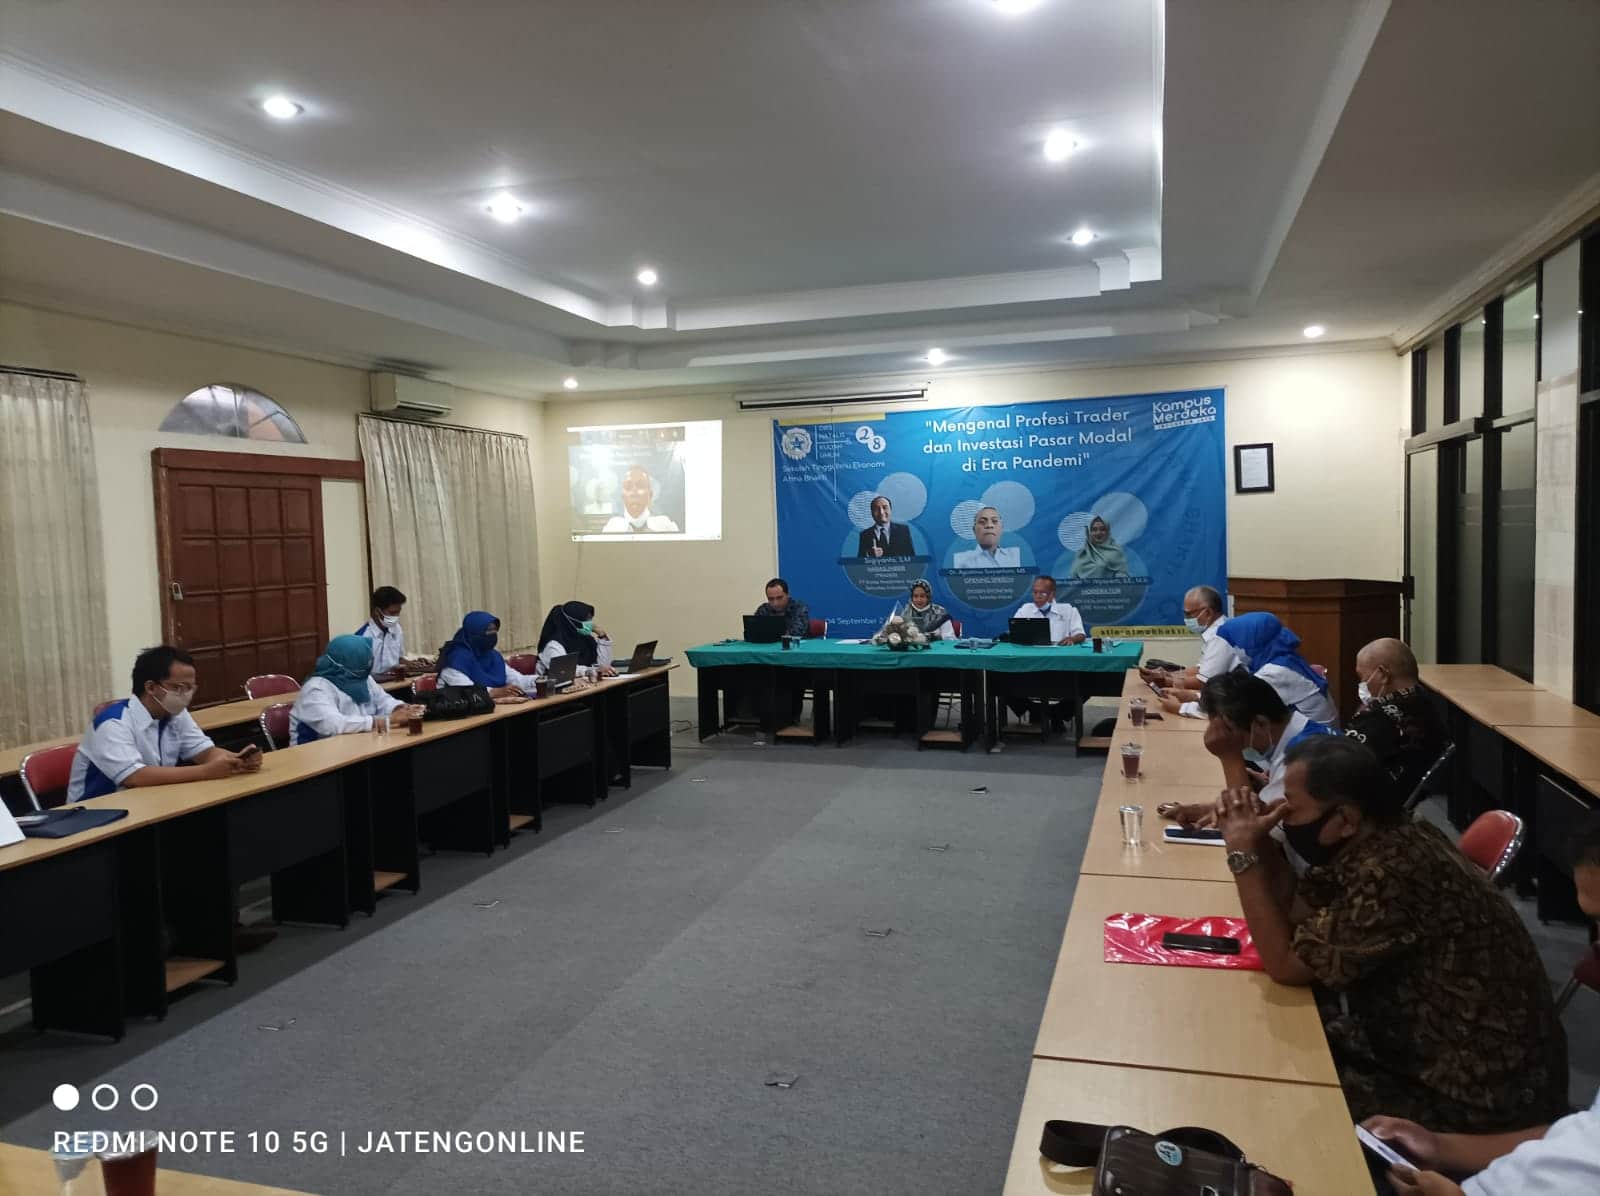 Kuliah umum STIE Atma Bakti Surakarta dengan webinar trading di masa pandemi, Sabtu (4/9)